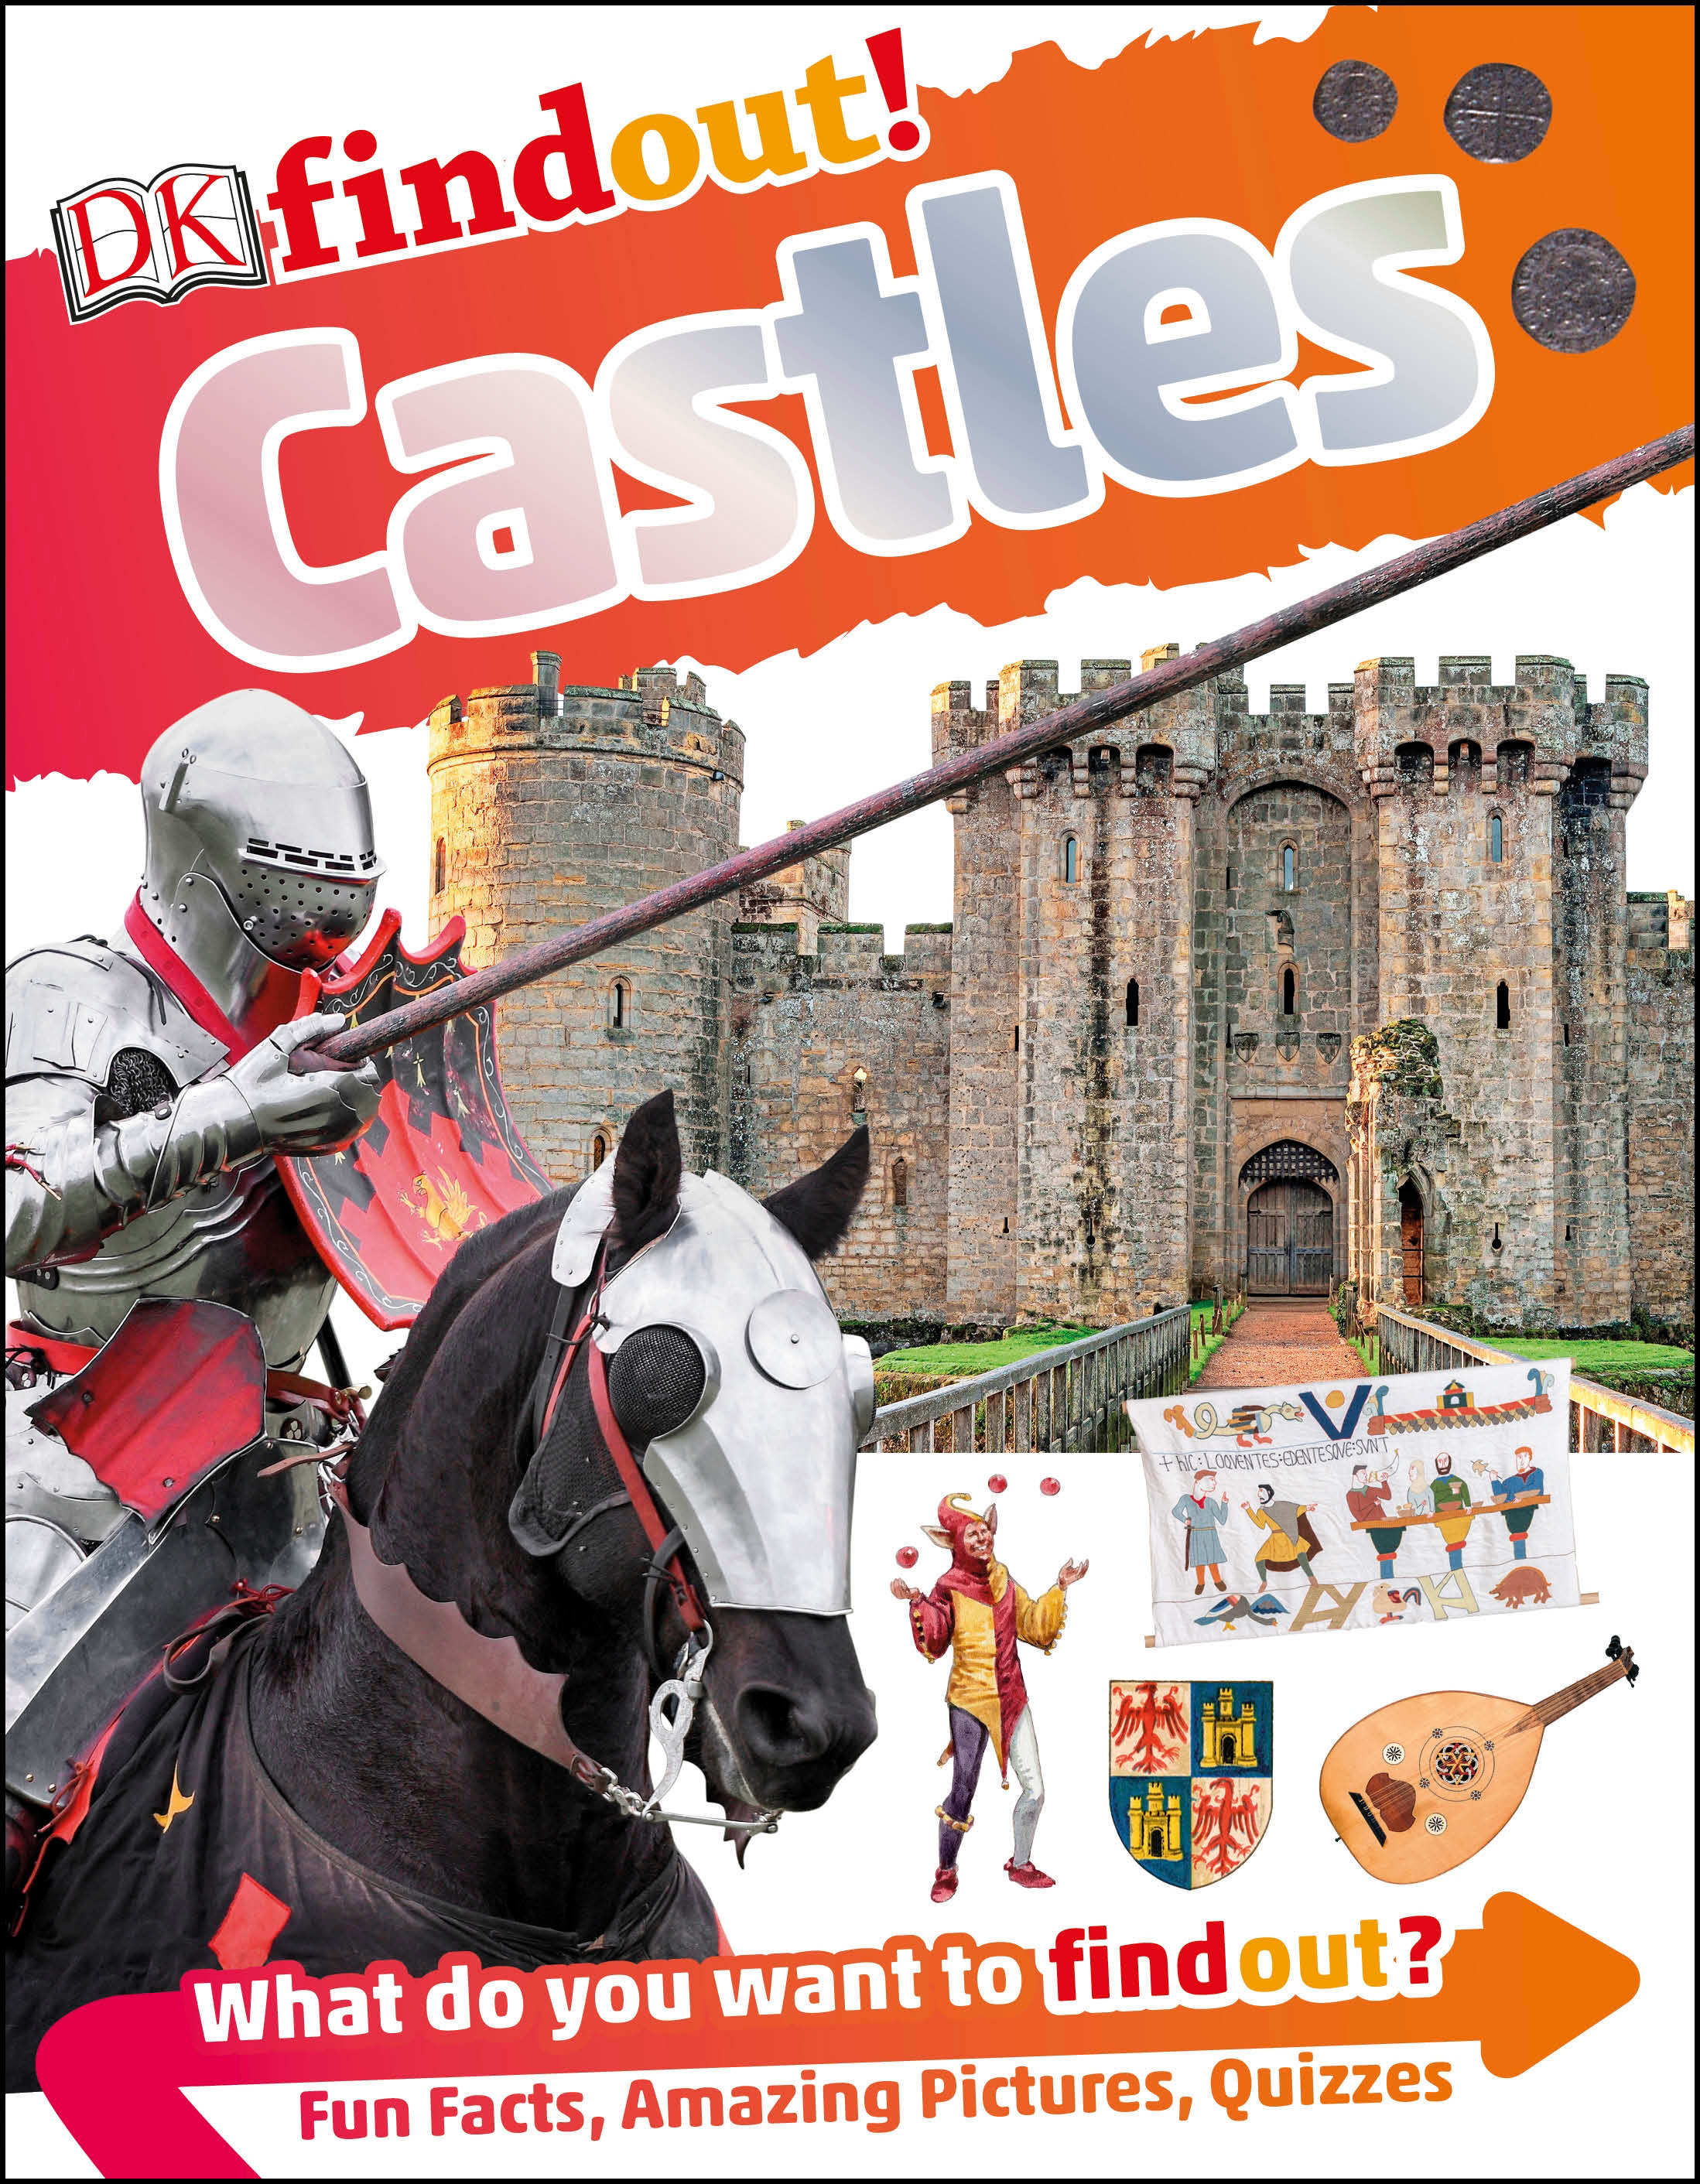 DK Findout Volume 1 Castles